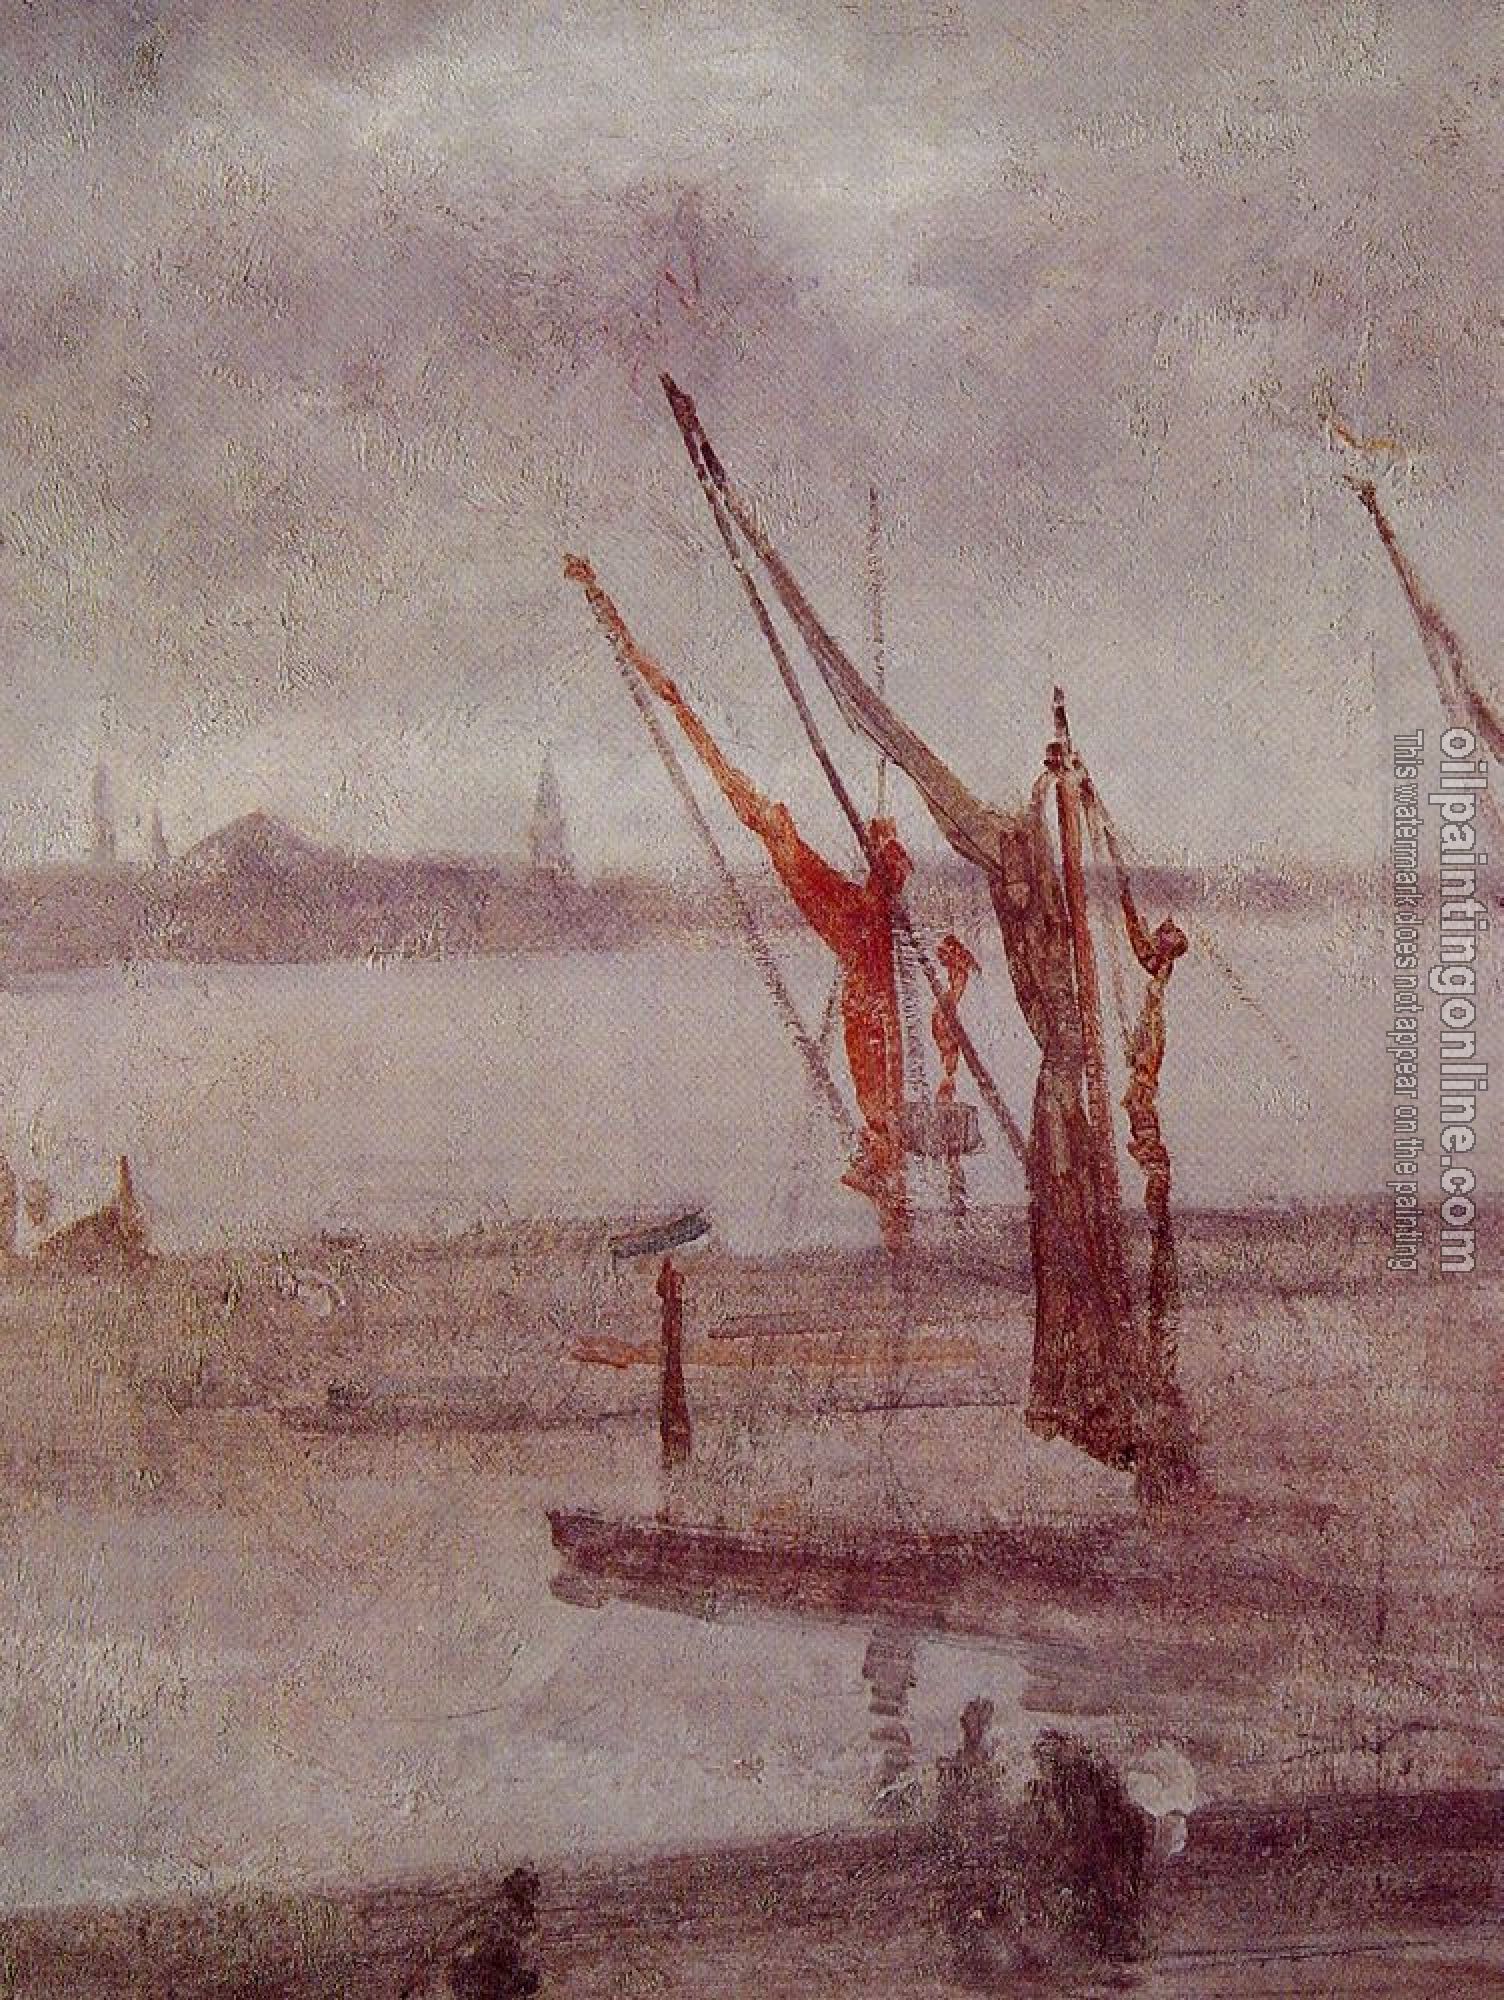 Whistler, James Abbottb McNeill - Chelsea Wharf